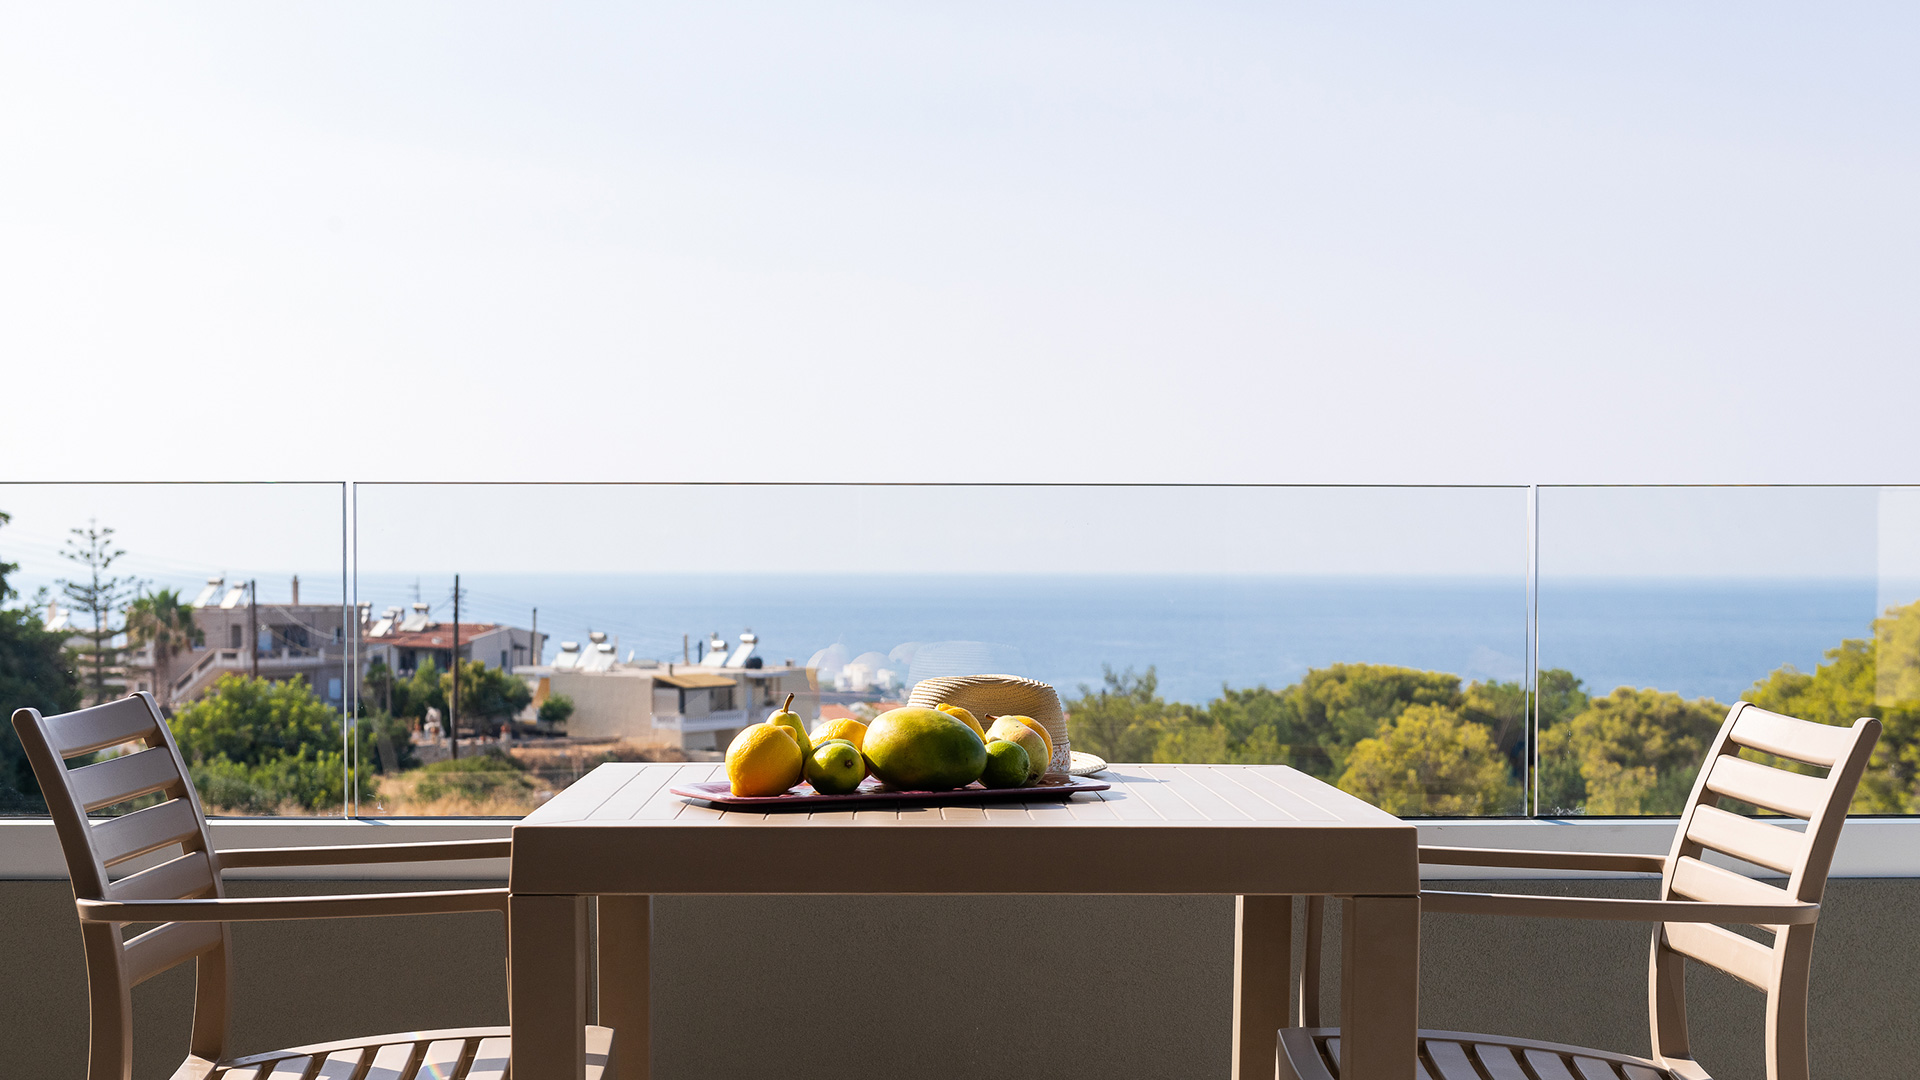 Φρούτα πάνω στο τραπέζι του μπαλκονιού με θέα στη θάλασσα